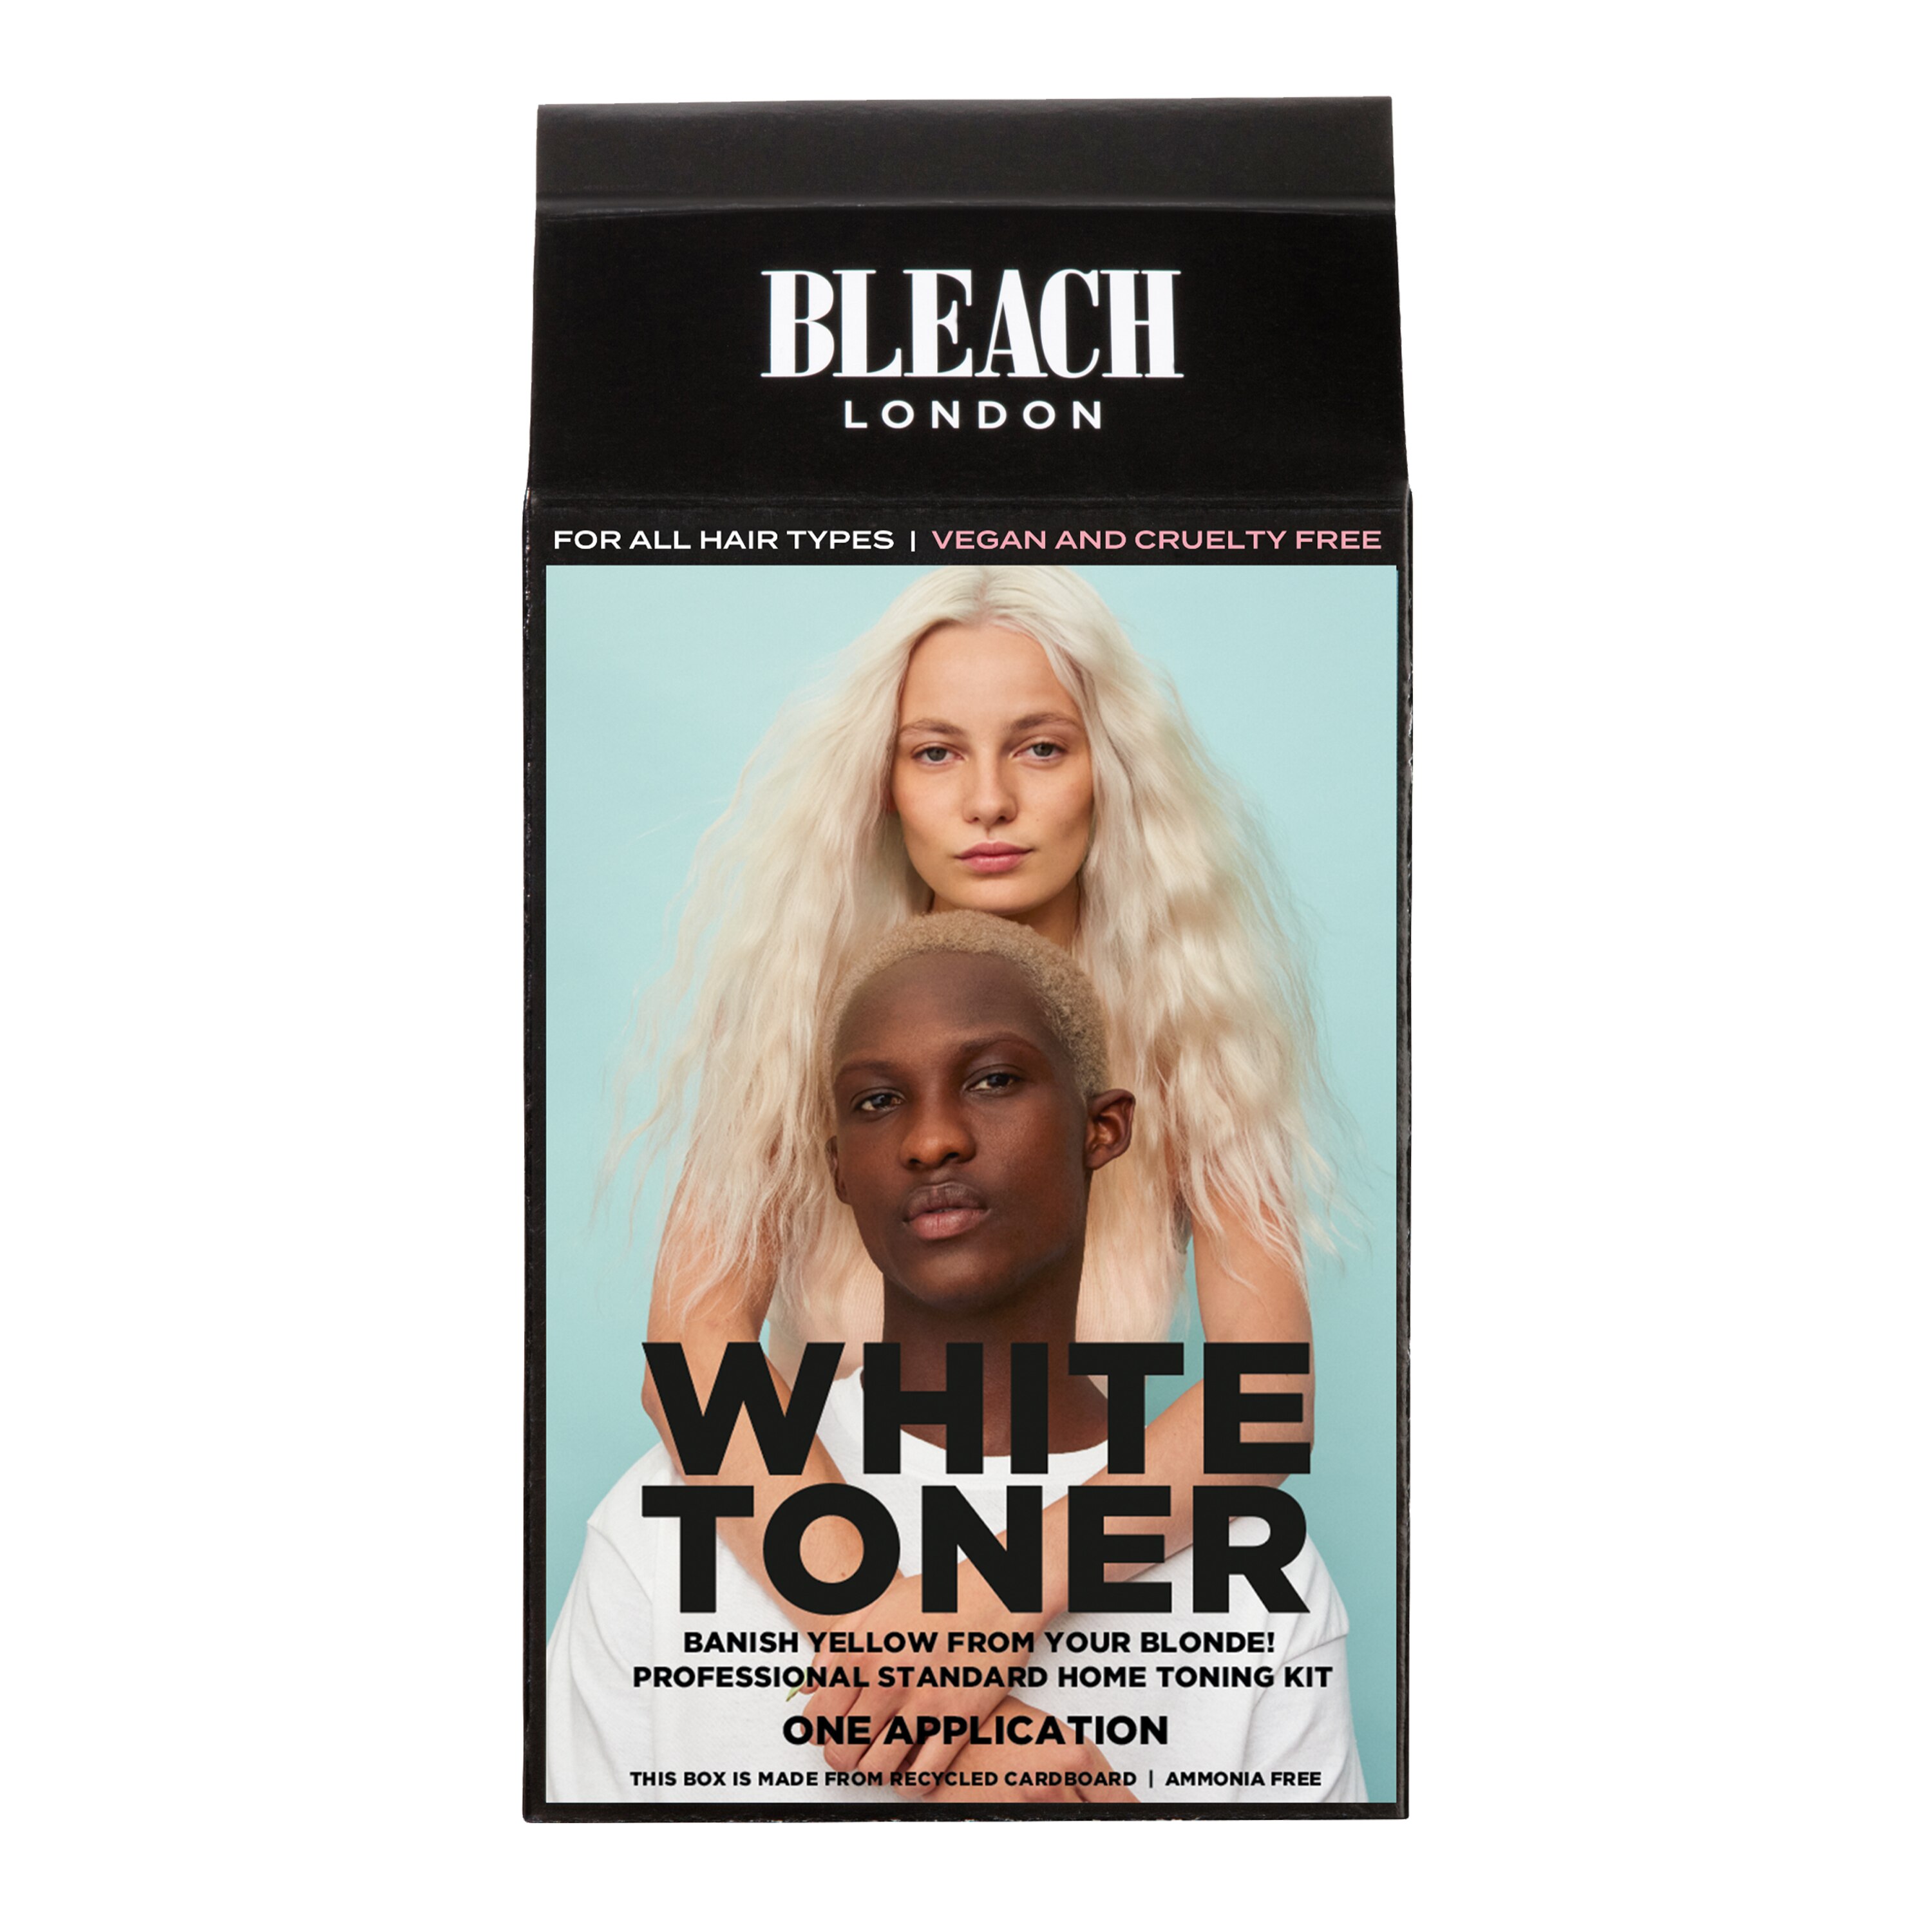 Bleach London White Toner Kit - 1 , CVS